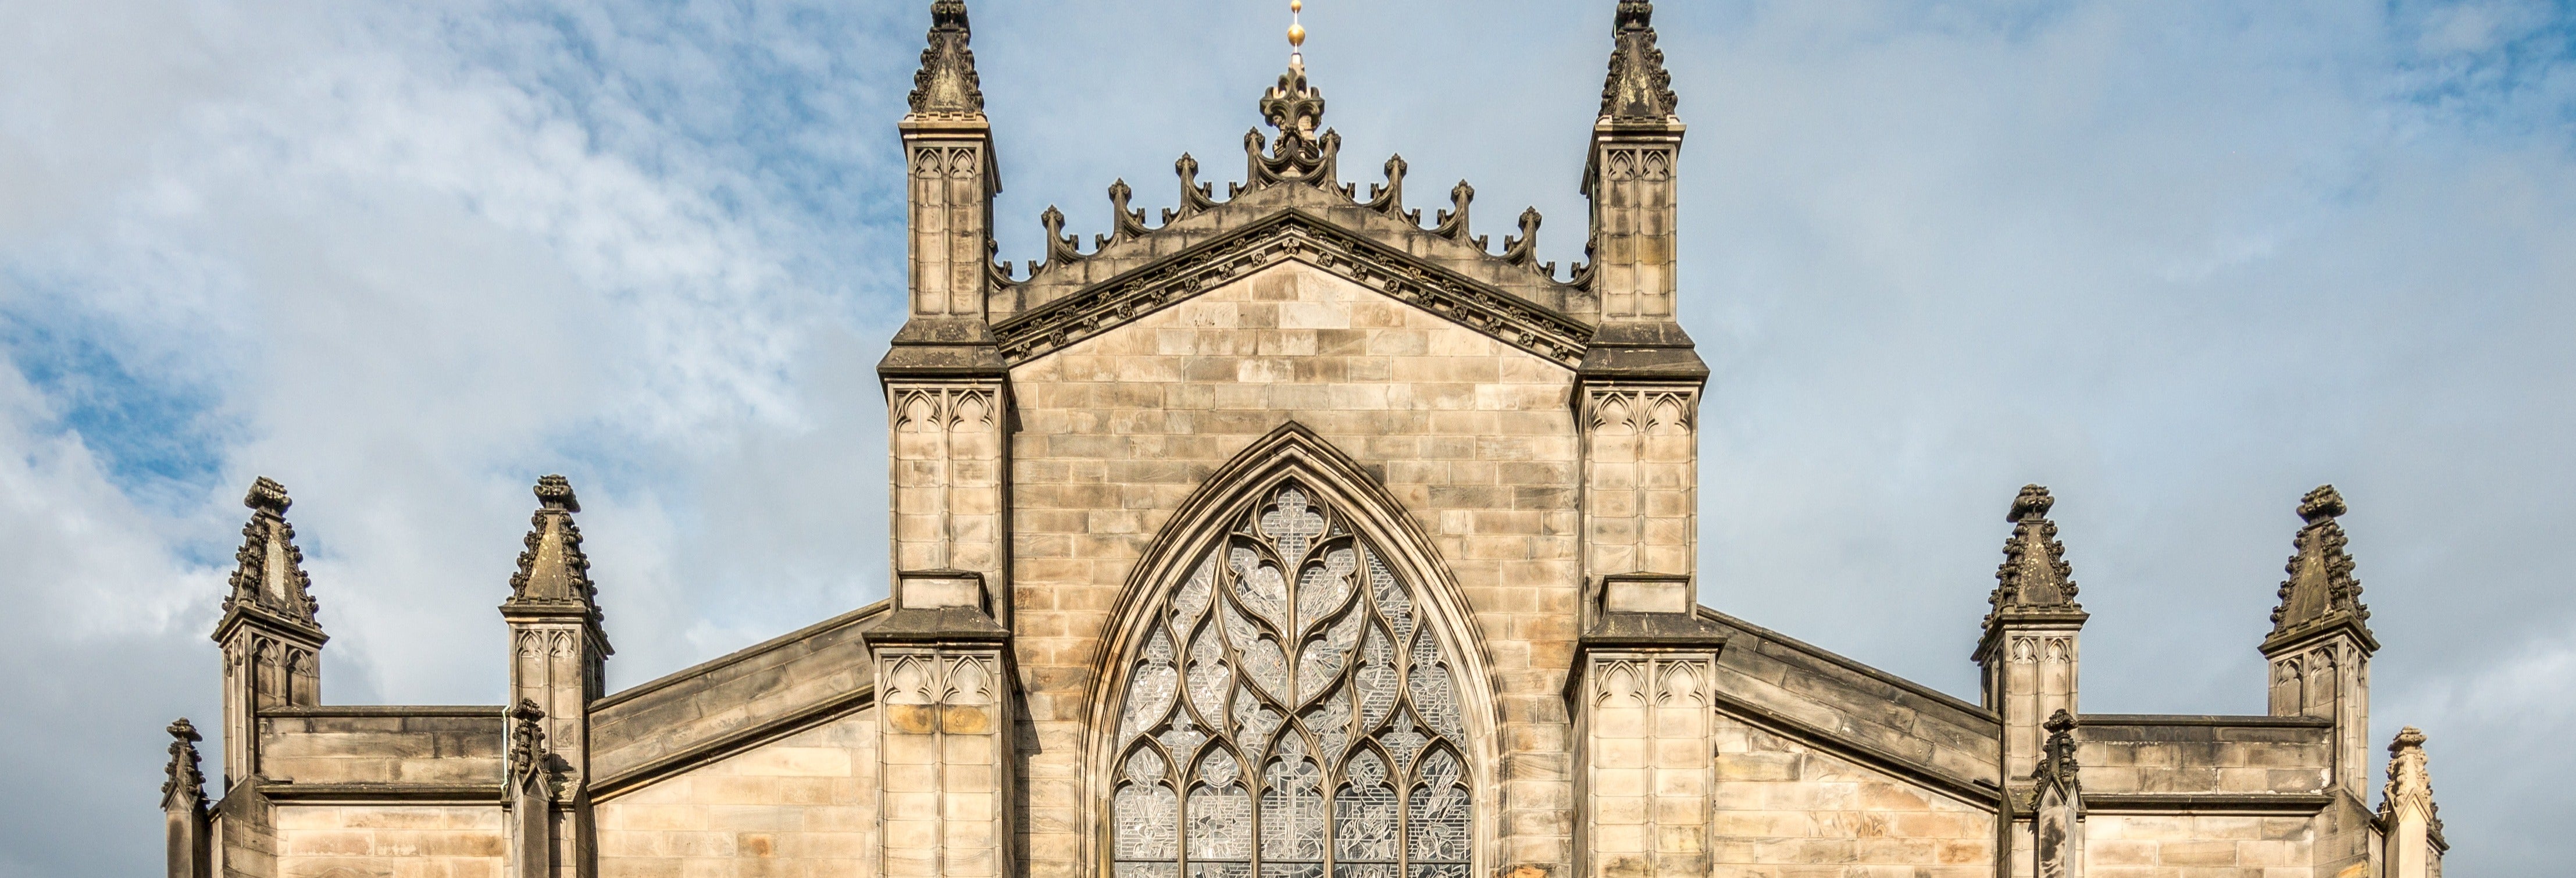 Catedral de San Giles